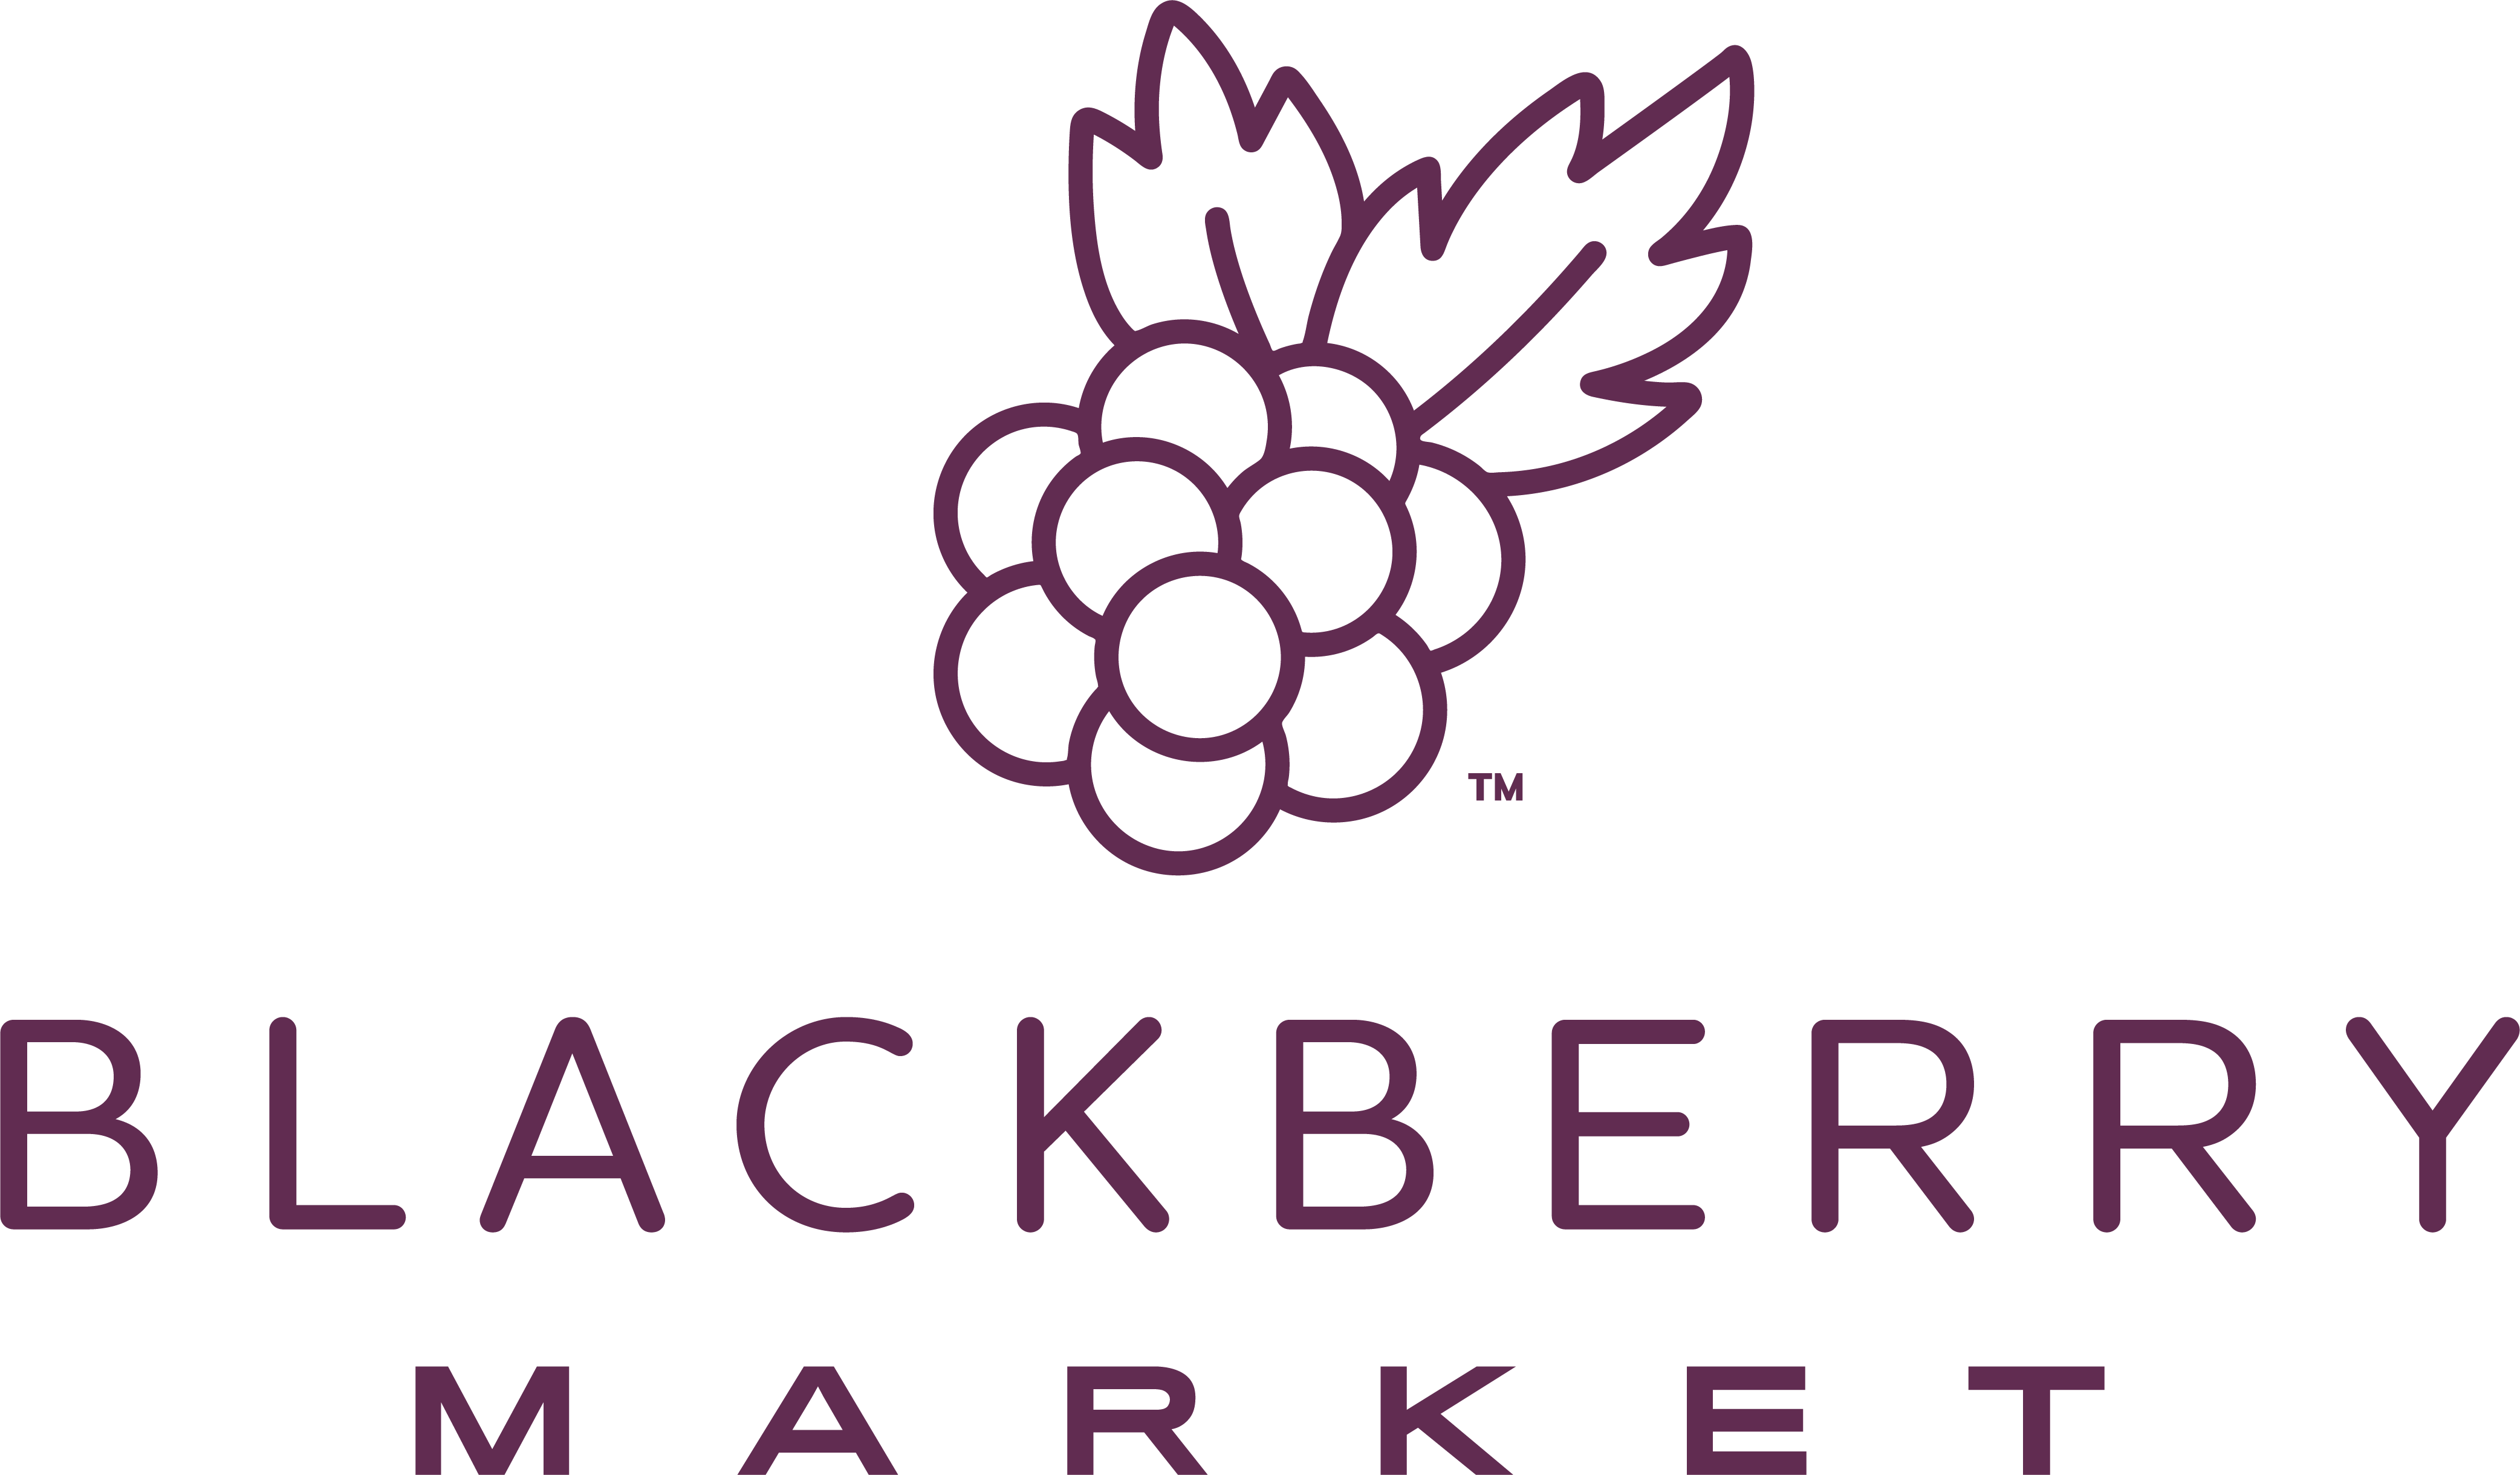 Blackberry market glen ellyn